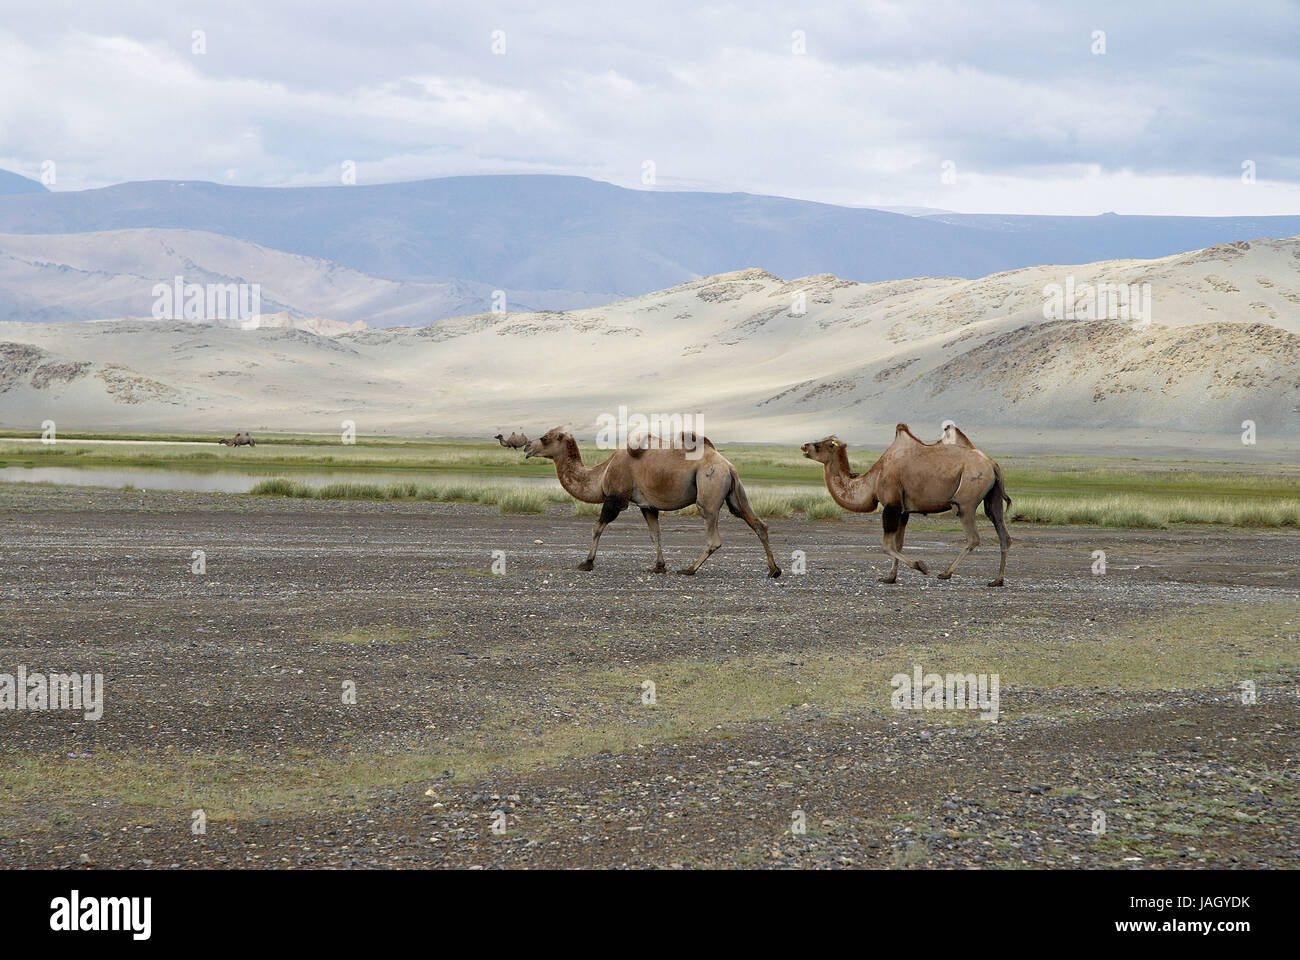 Mongolia,extreme west province,Bayan Olgii province,Tsambagarav national park,camels, Stock Photo